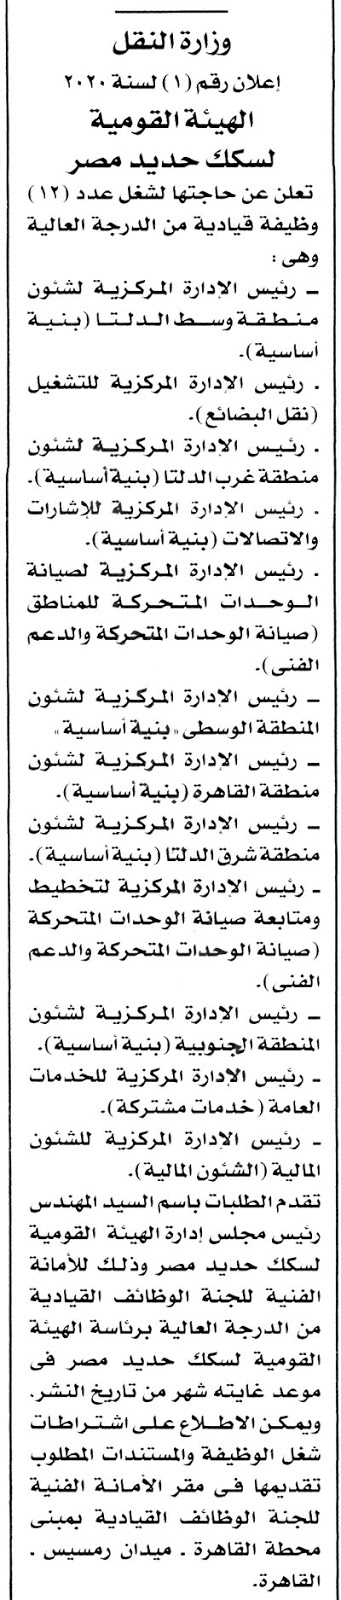 اعلان وظائف سكك حديد مصر - اعلان رقم 1 لسنة 2020 والتقديم حتى 1 اغسطس 2020